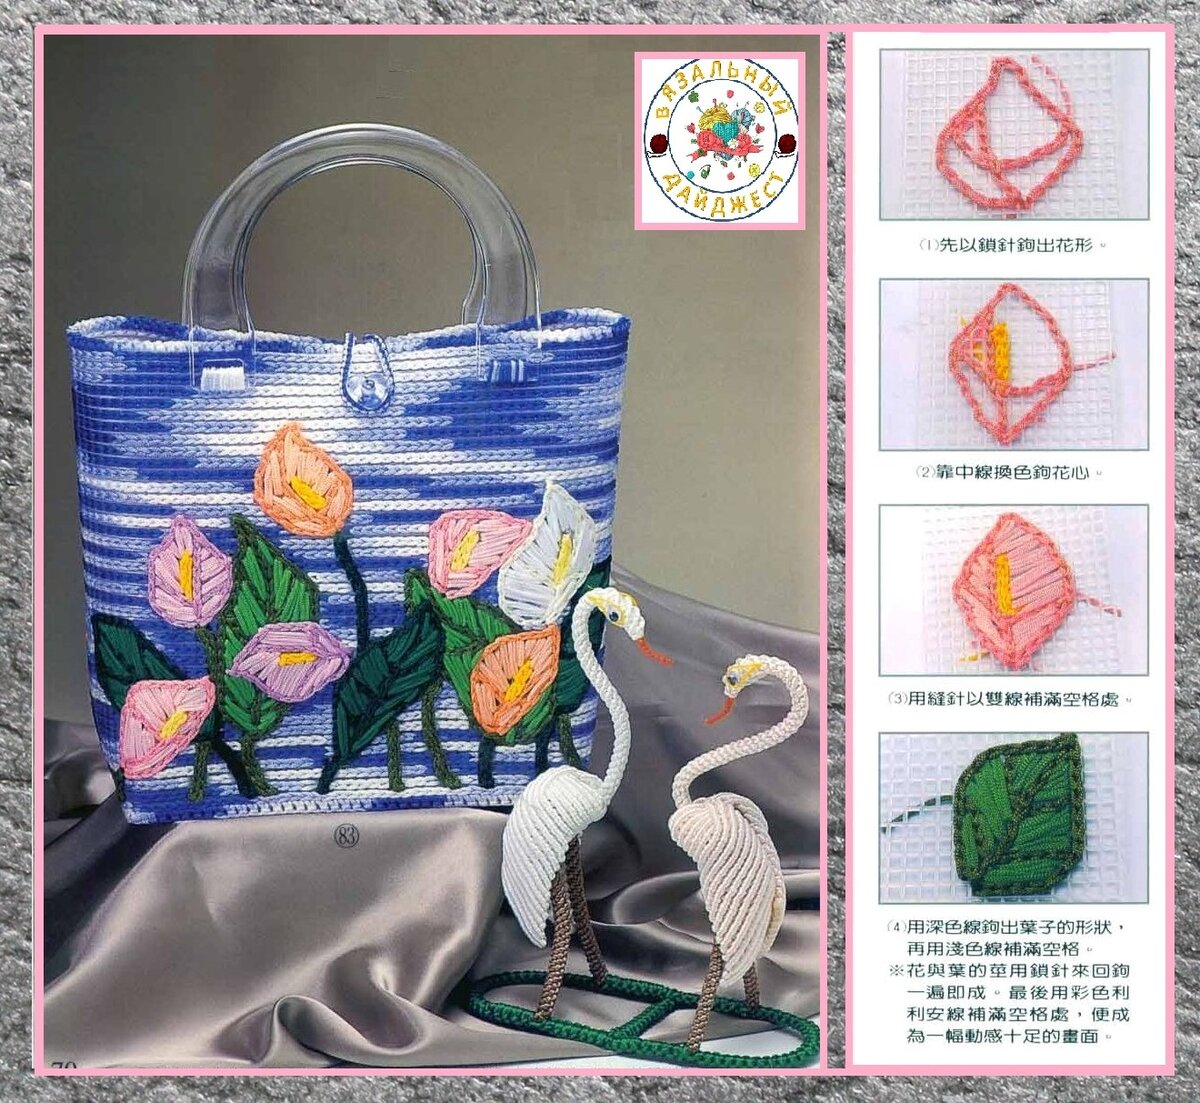 Виды пляжных сумок: форма, материал, цвет